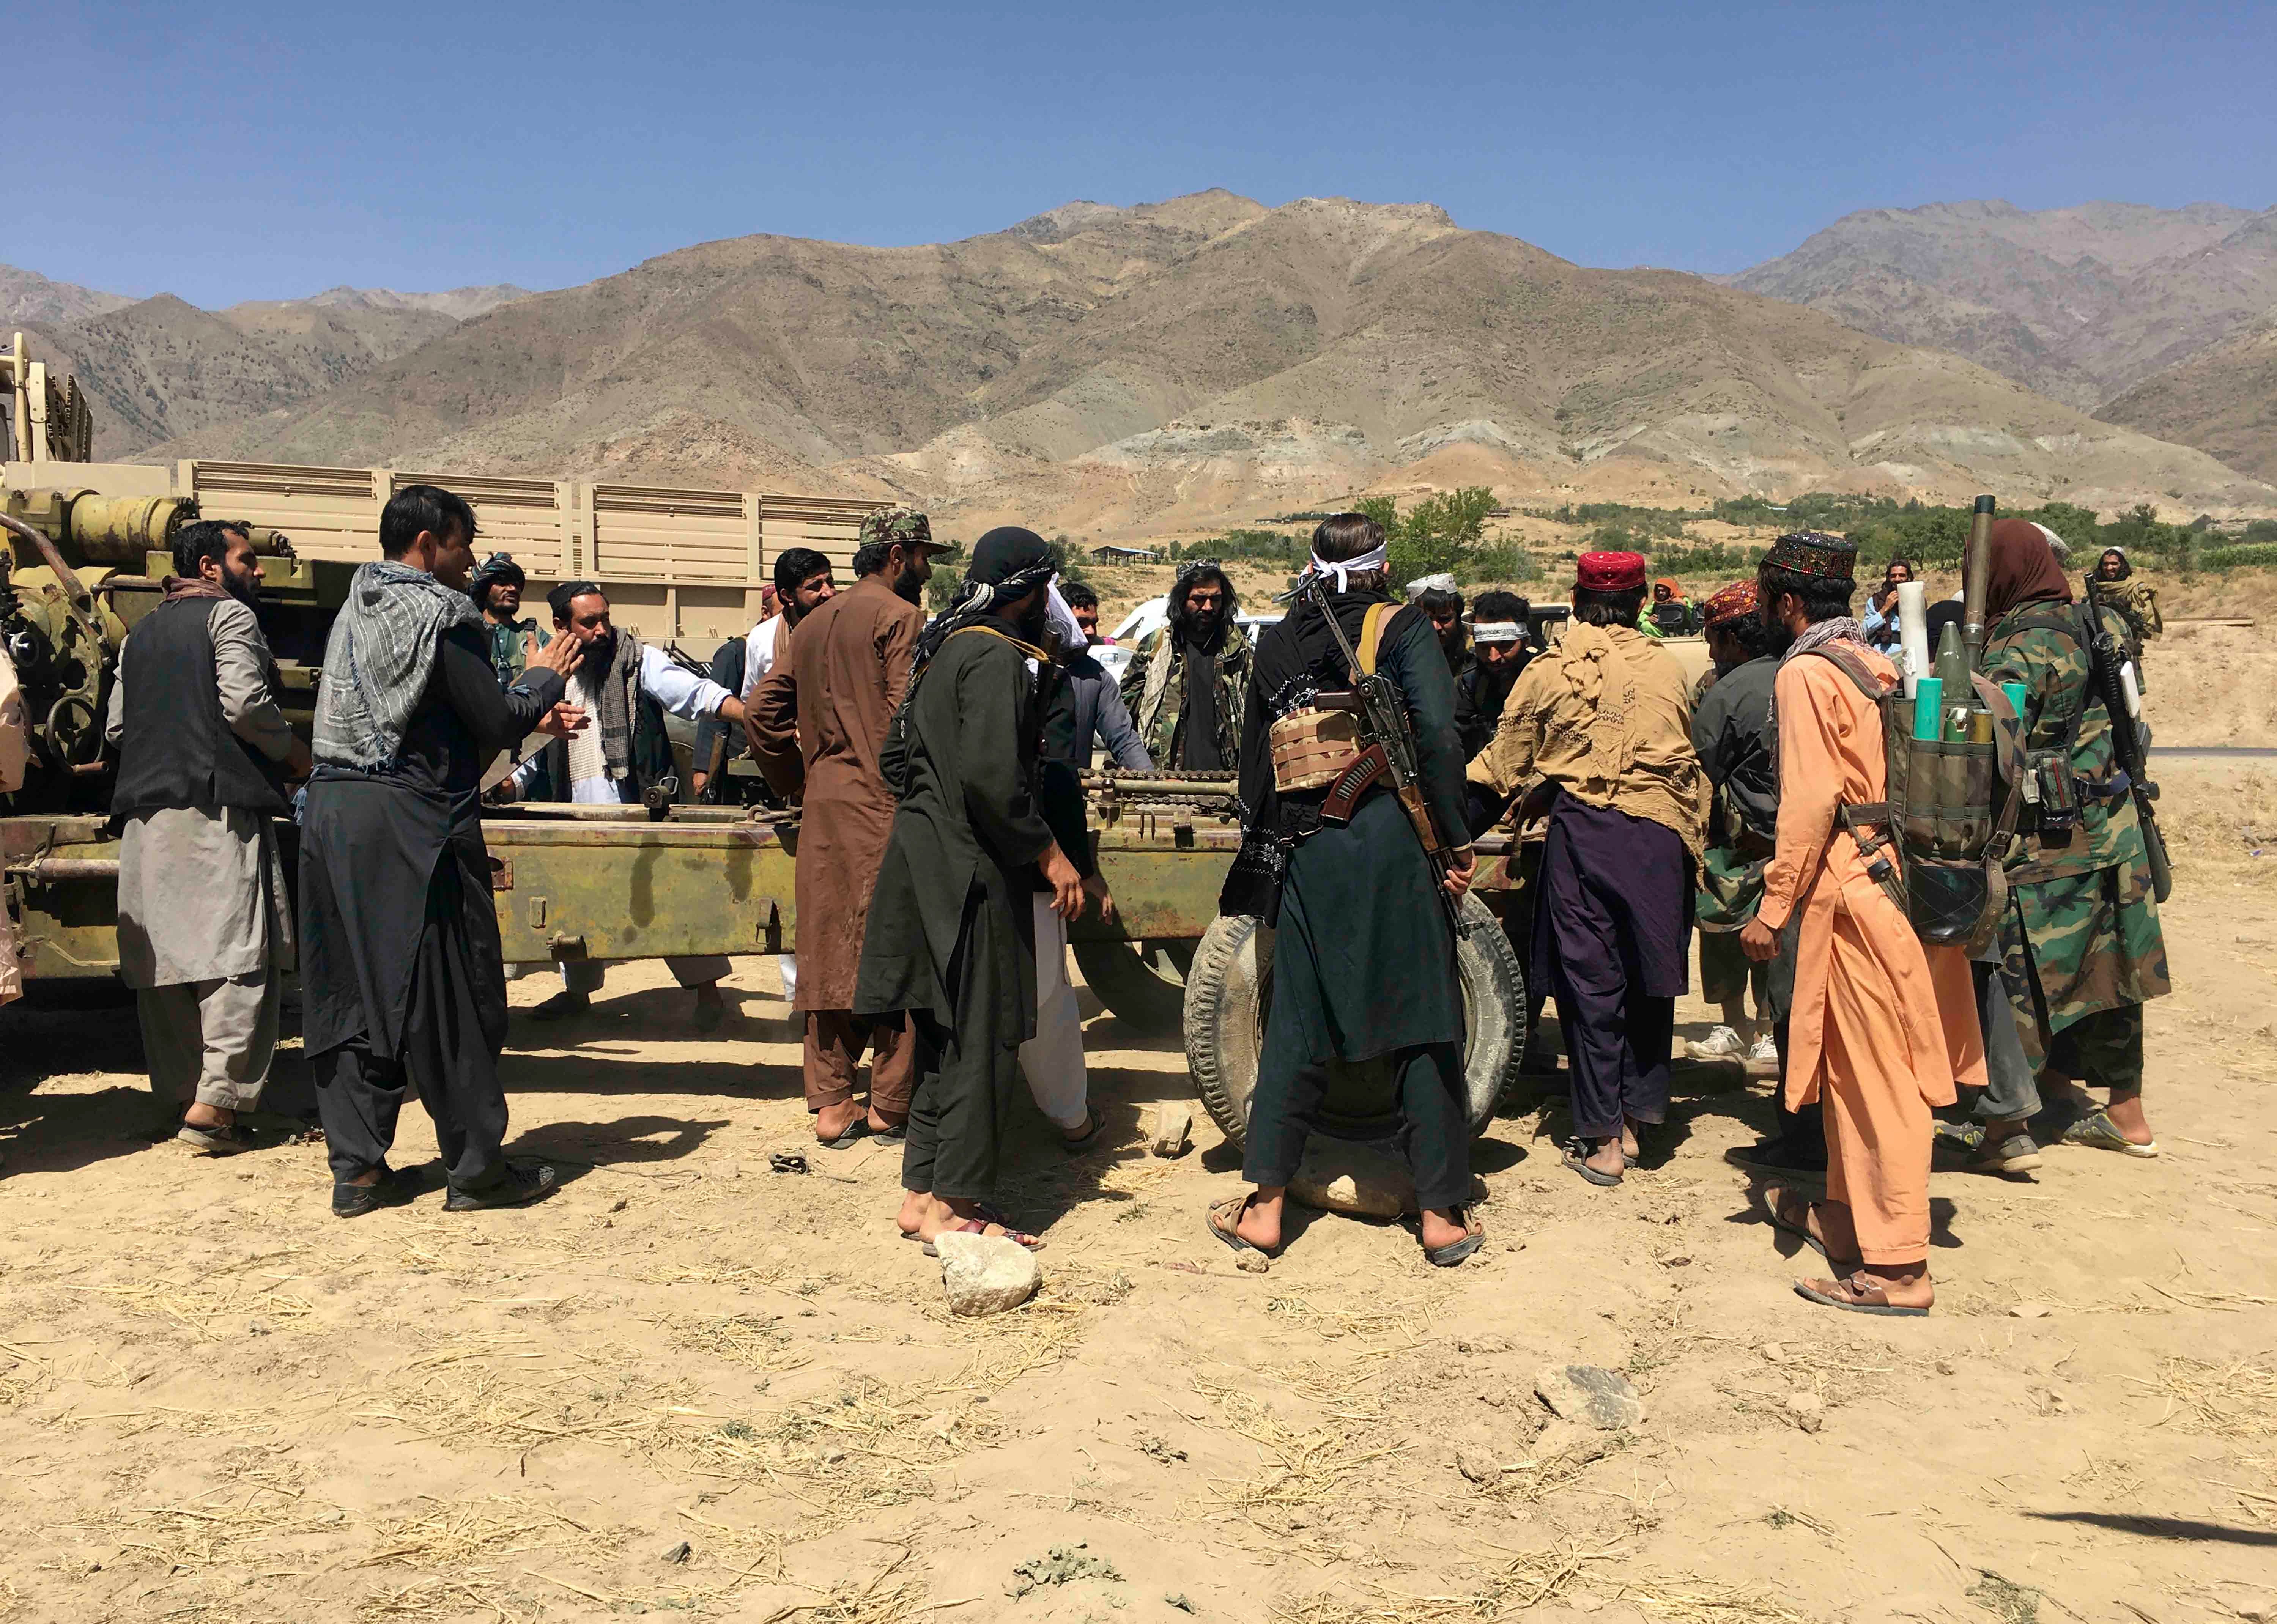 که نیروهای امنیتی طالبان در پنجشیر در شمال افغانستان به طور غیرقانونی ساکنان متهم به ارتباط با یک گروه مسلح مخالف را بازداشت و شکنجه کرده است. 